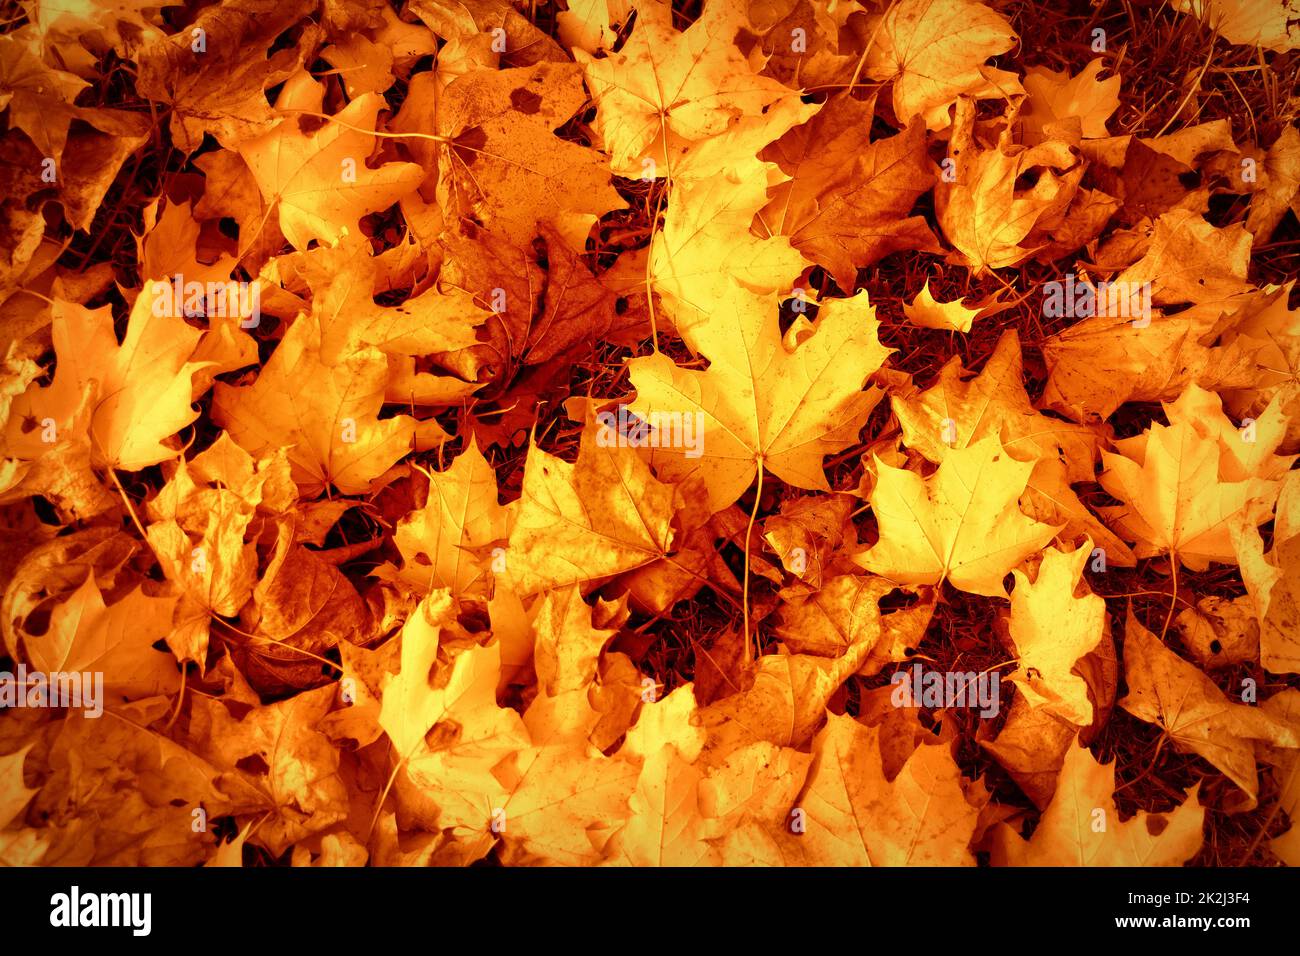 El otoño deja el fondo. Imagen colorida de hojas otoñales caídos, perfecta para uso estacional. Foto de stock